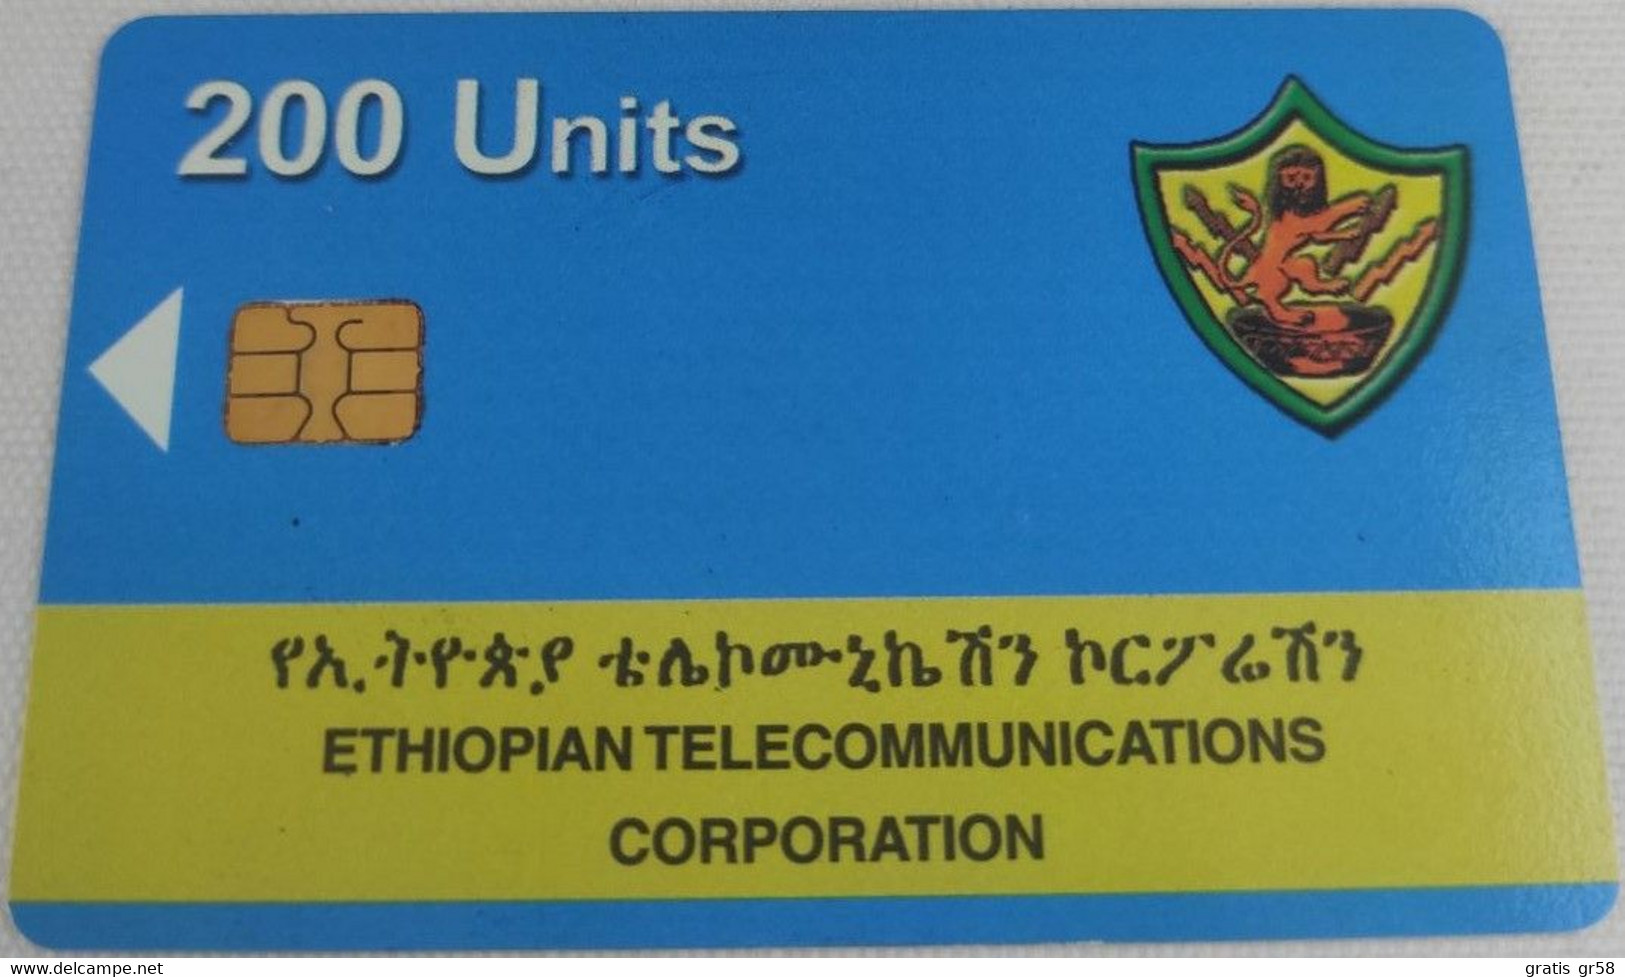 Ethiopia - ET-ETC-0002B, ETC Logo 200 Units, S35 Chip, M 0483 11/00 F.N.M.T., 2003, Used - Ethiopia